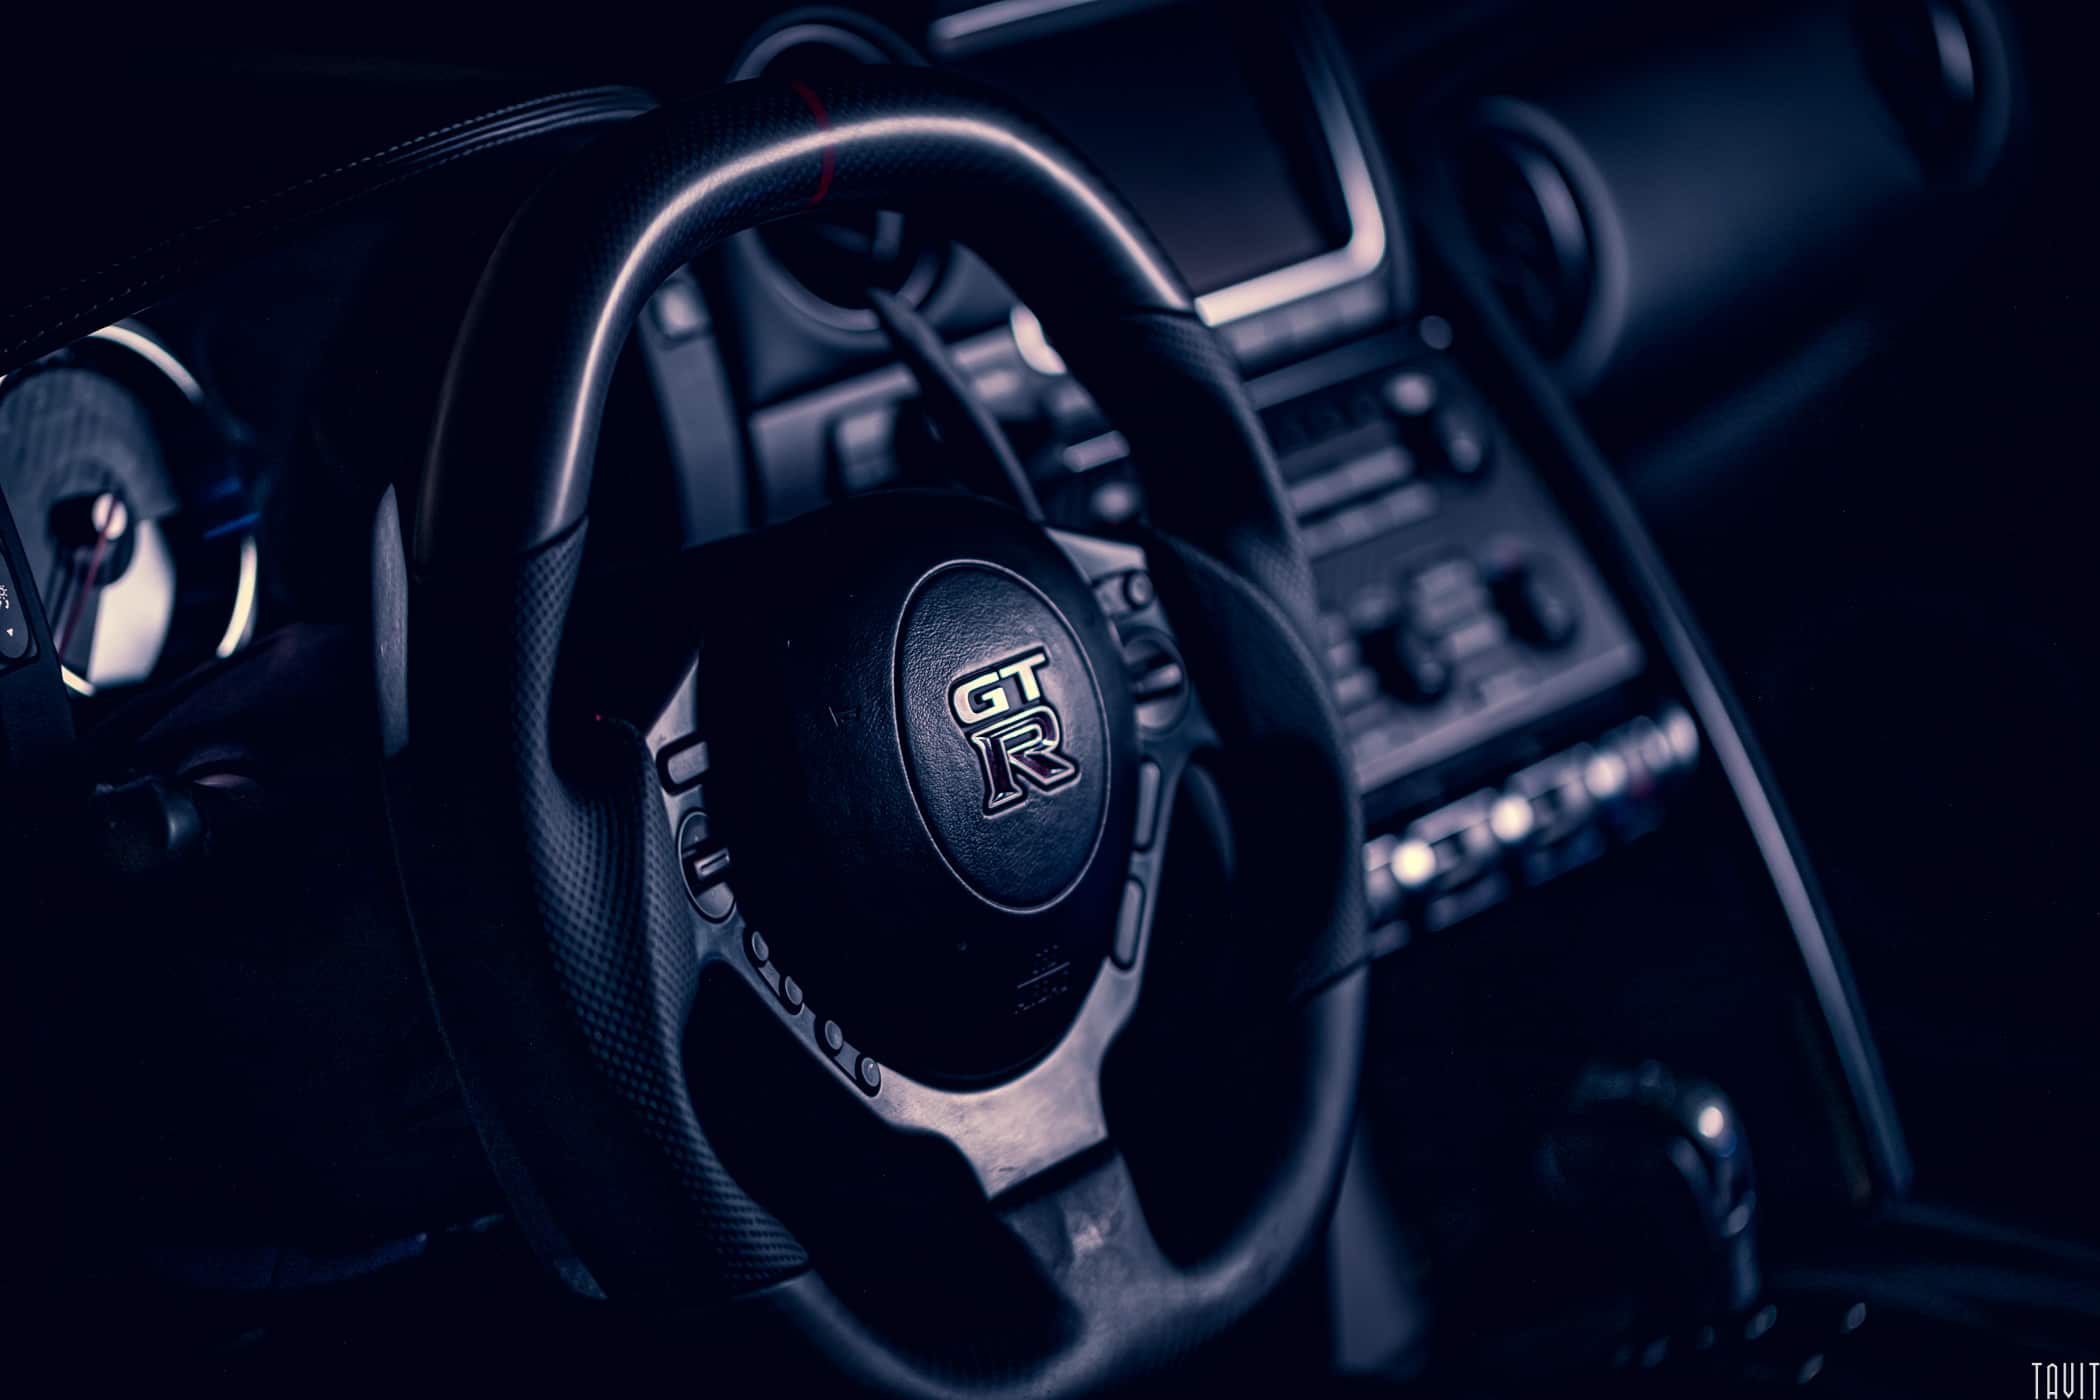 GTR steering wheel